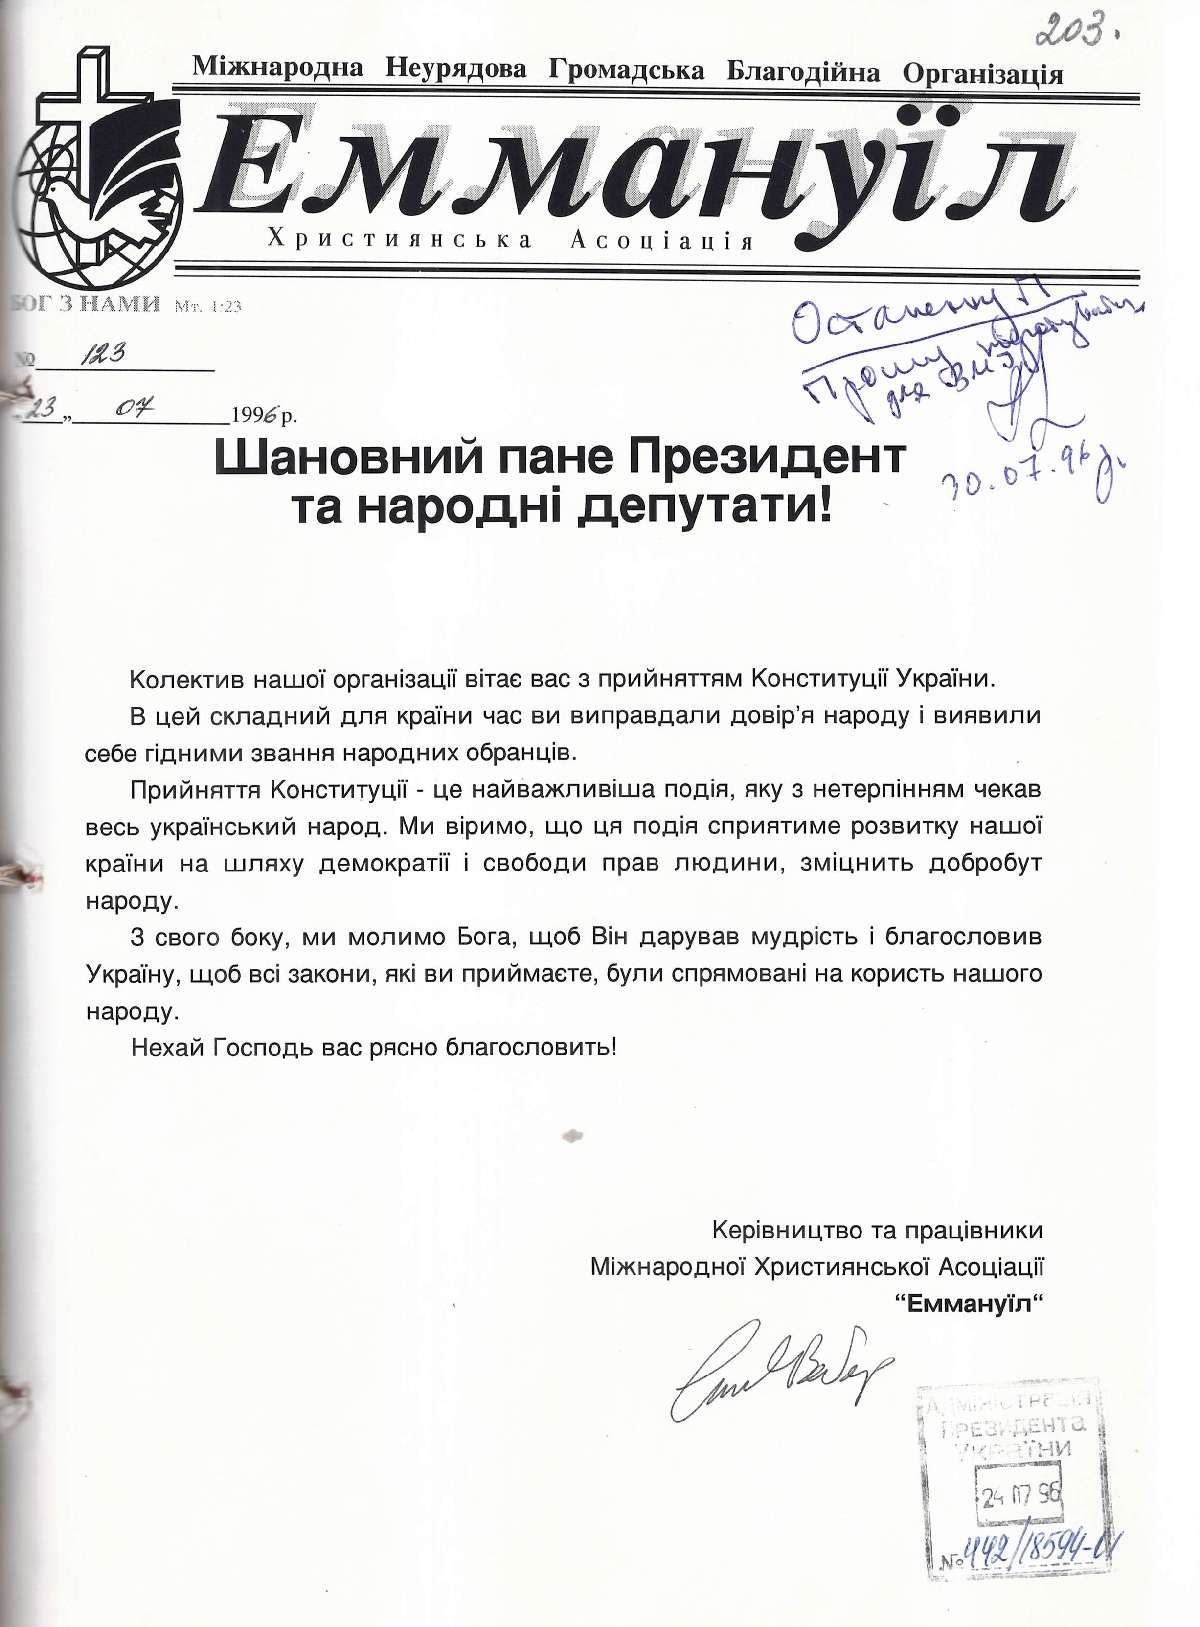 Привітання від Міжнародної Неурядової Громадської Благодійної Організації “Еммануїл” Президента України. 30 липня 1996 р.